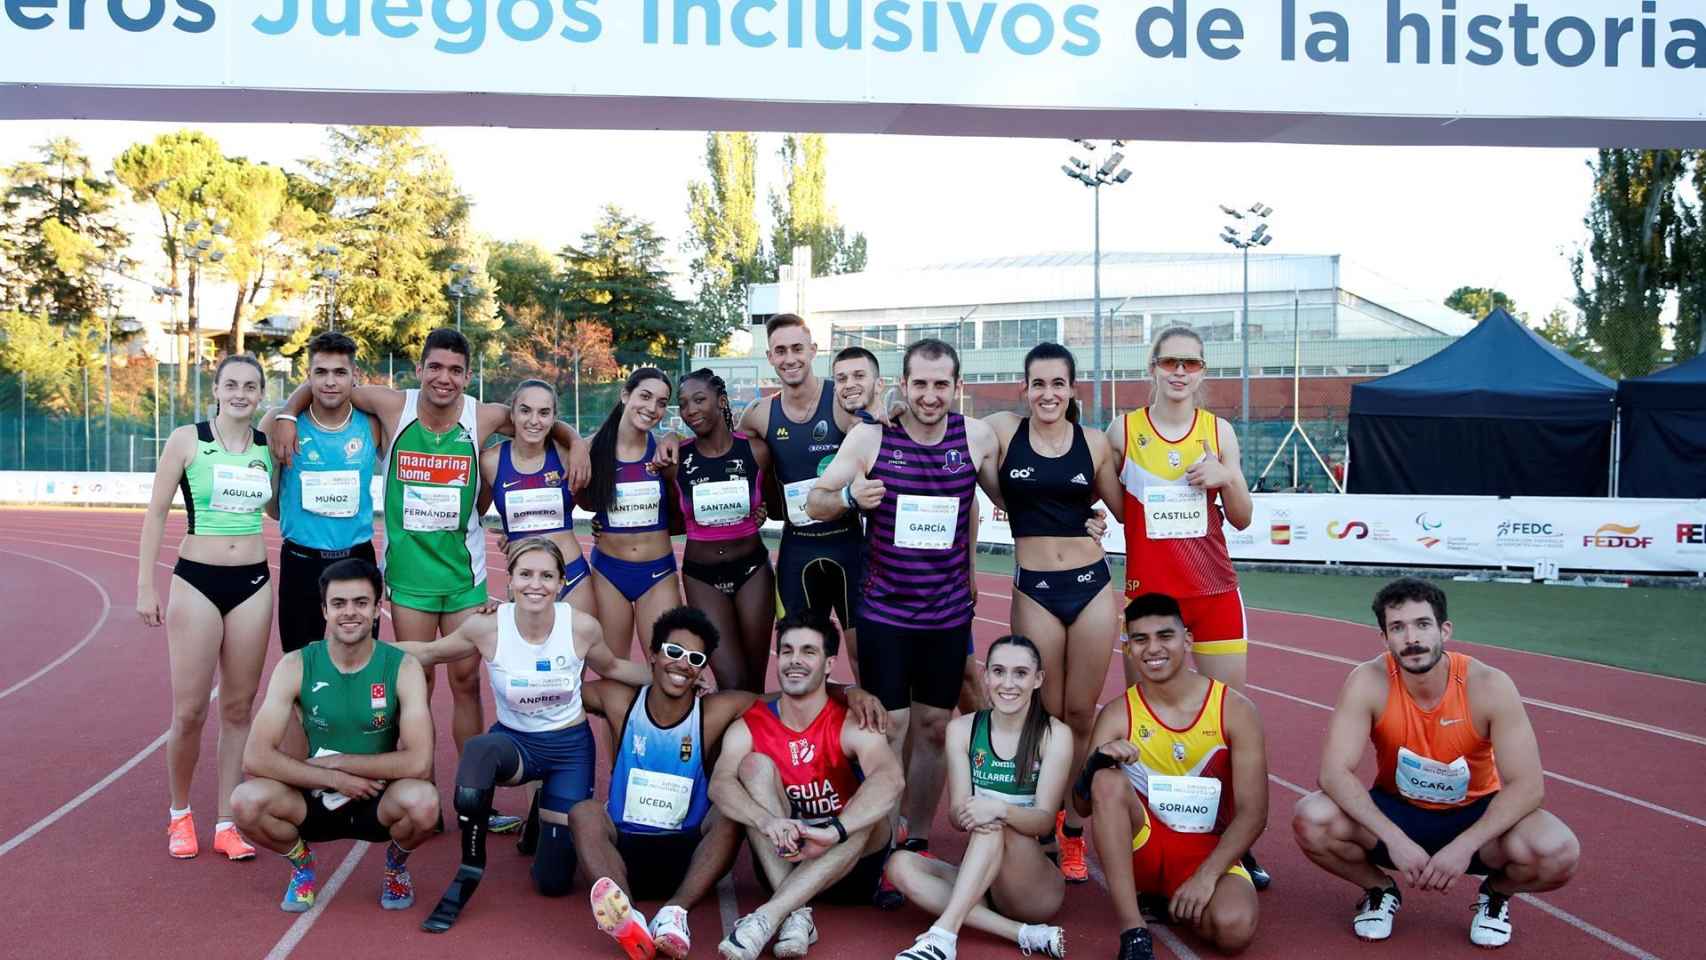 Participantes de la prueba de relevos 4x100 en los Juegos Inclusivos